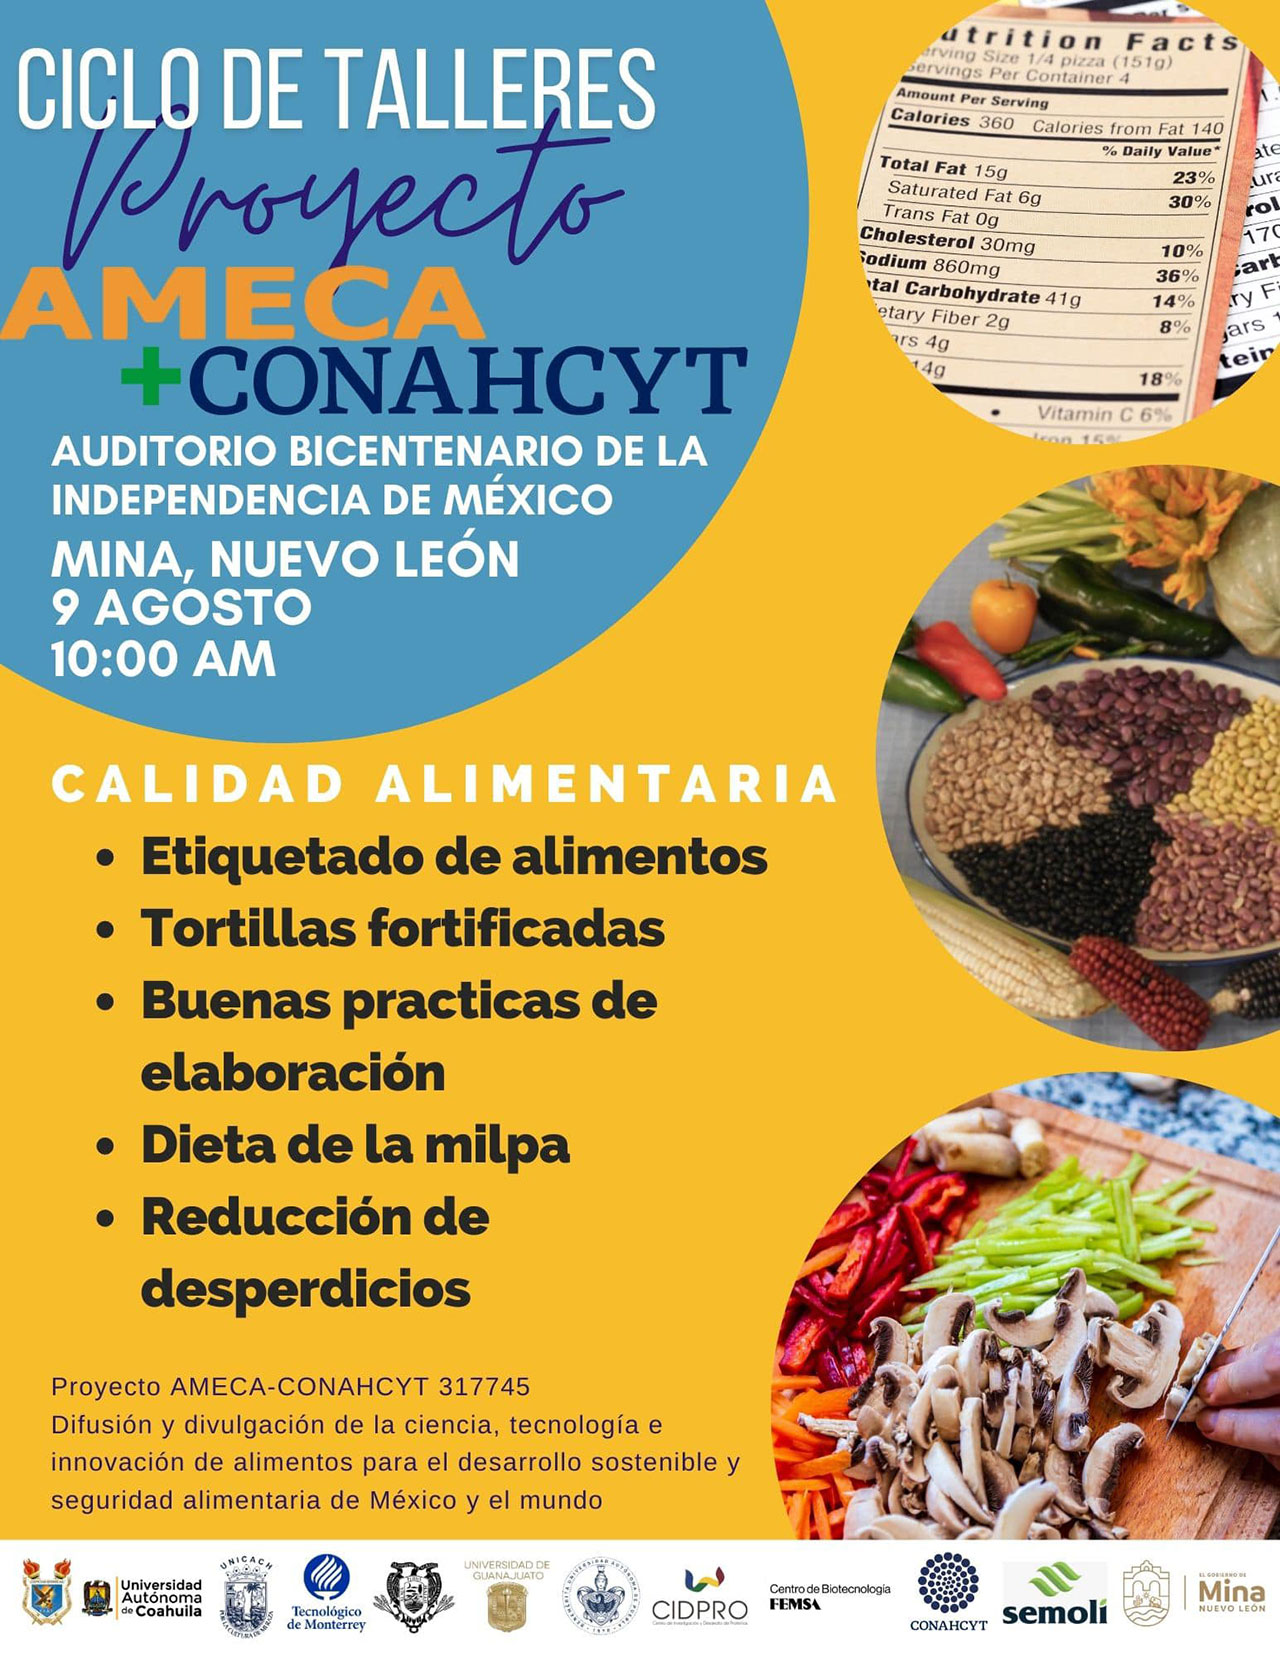 Proyecto AMECA+CONAHCYT. Ciclo de Talleres. Mina, Nuevo León - AMECA, AC